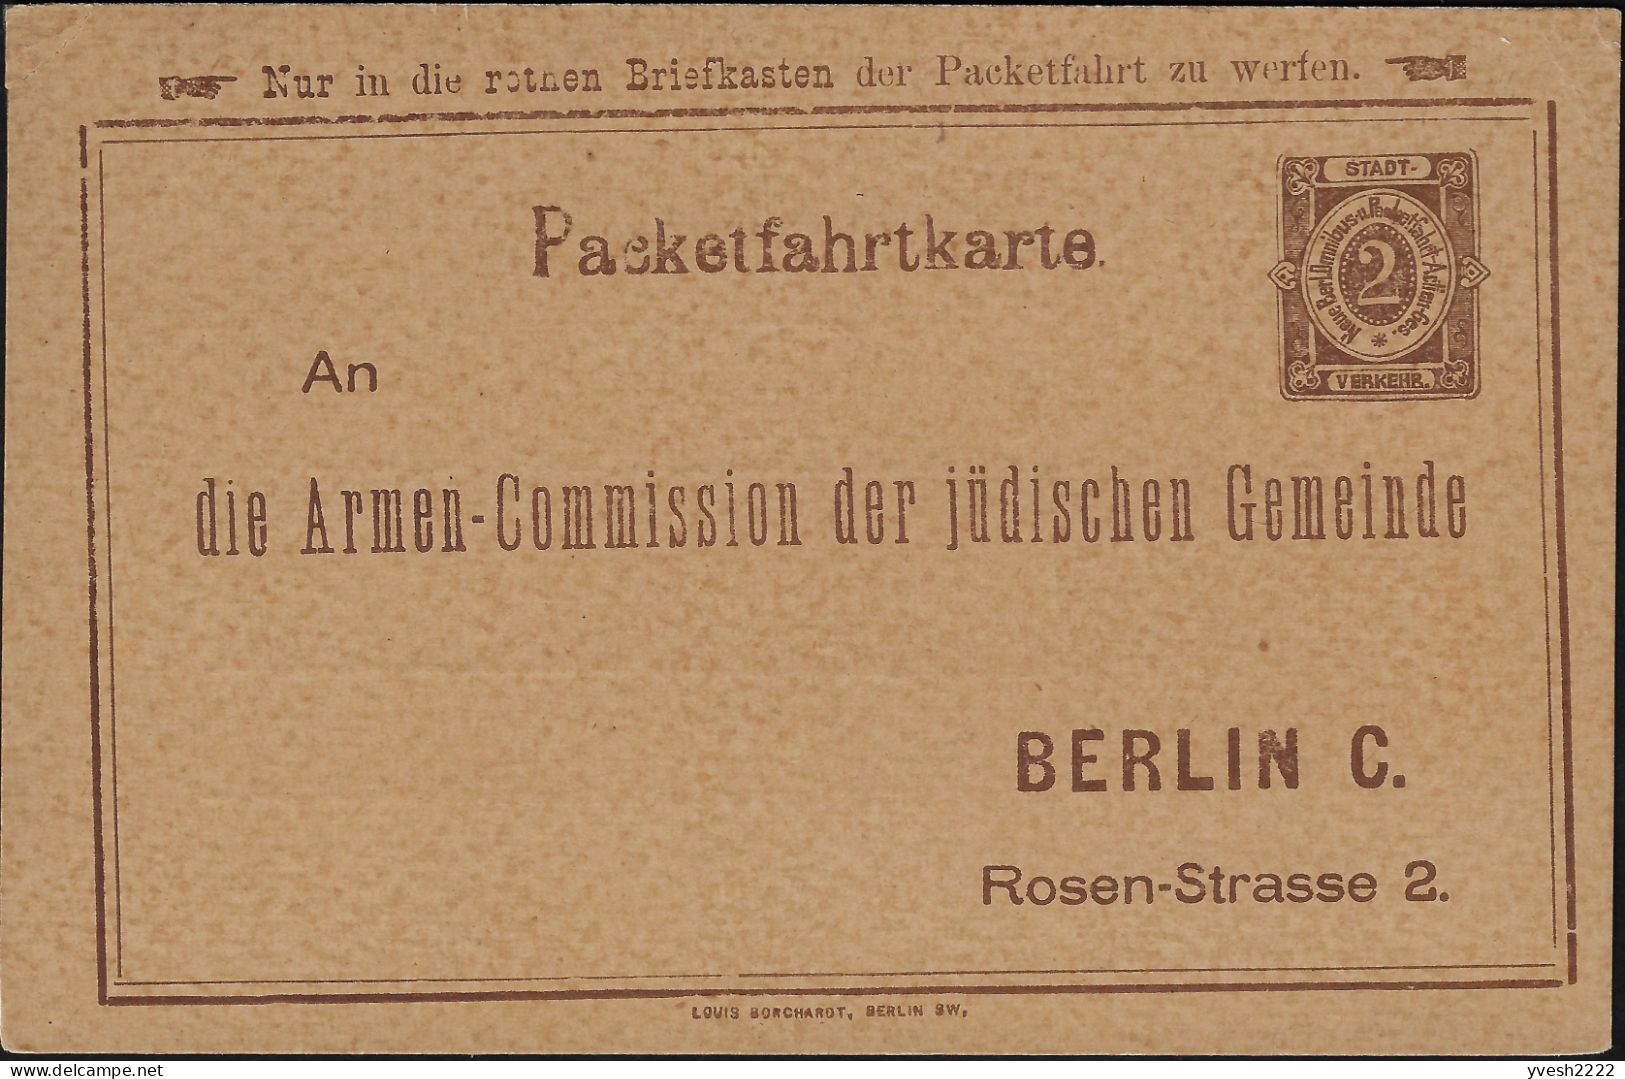 Berlin 1886 1888, 1897. 3 Entiers Postaux Poste Privée. Collecte De Fonds Pour Les Pauvres De La Communauté Juive Locale - Judaísmo